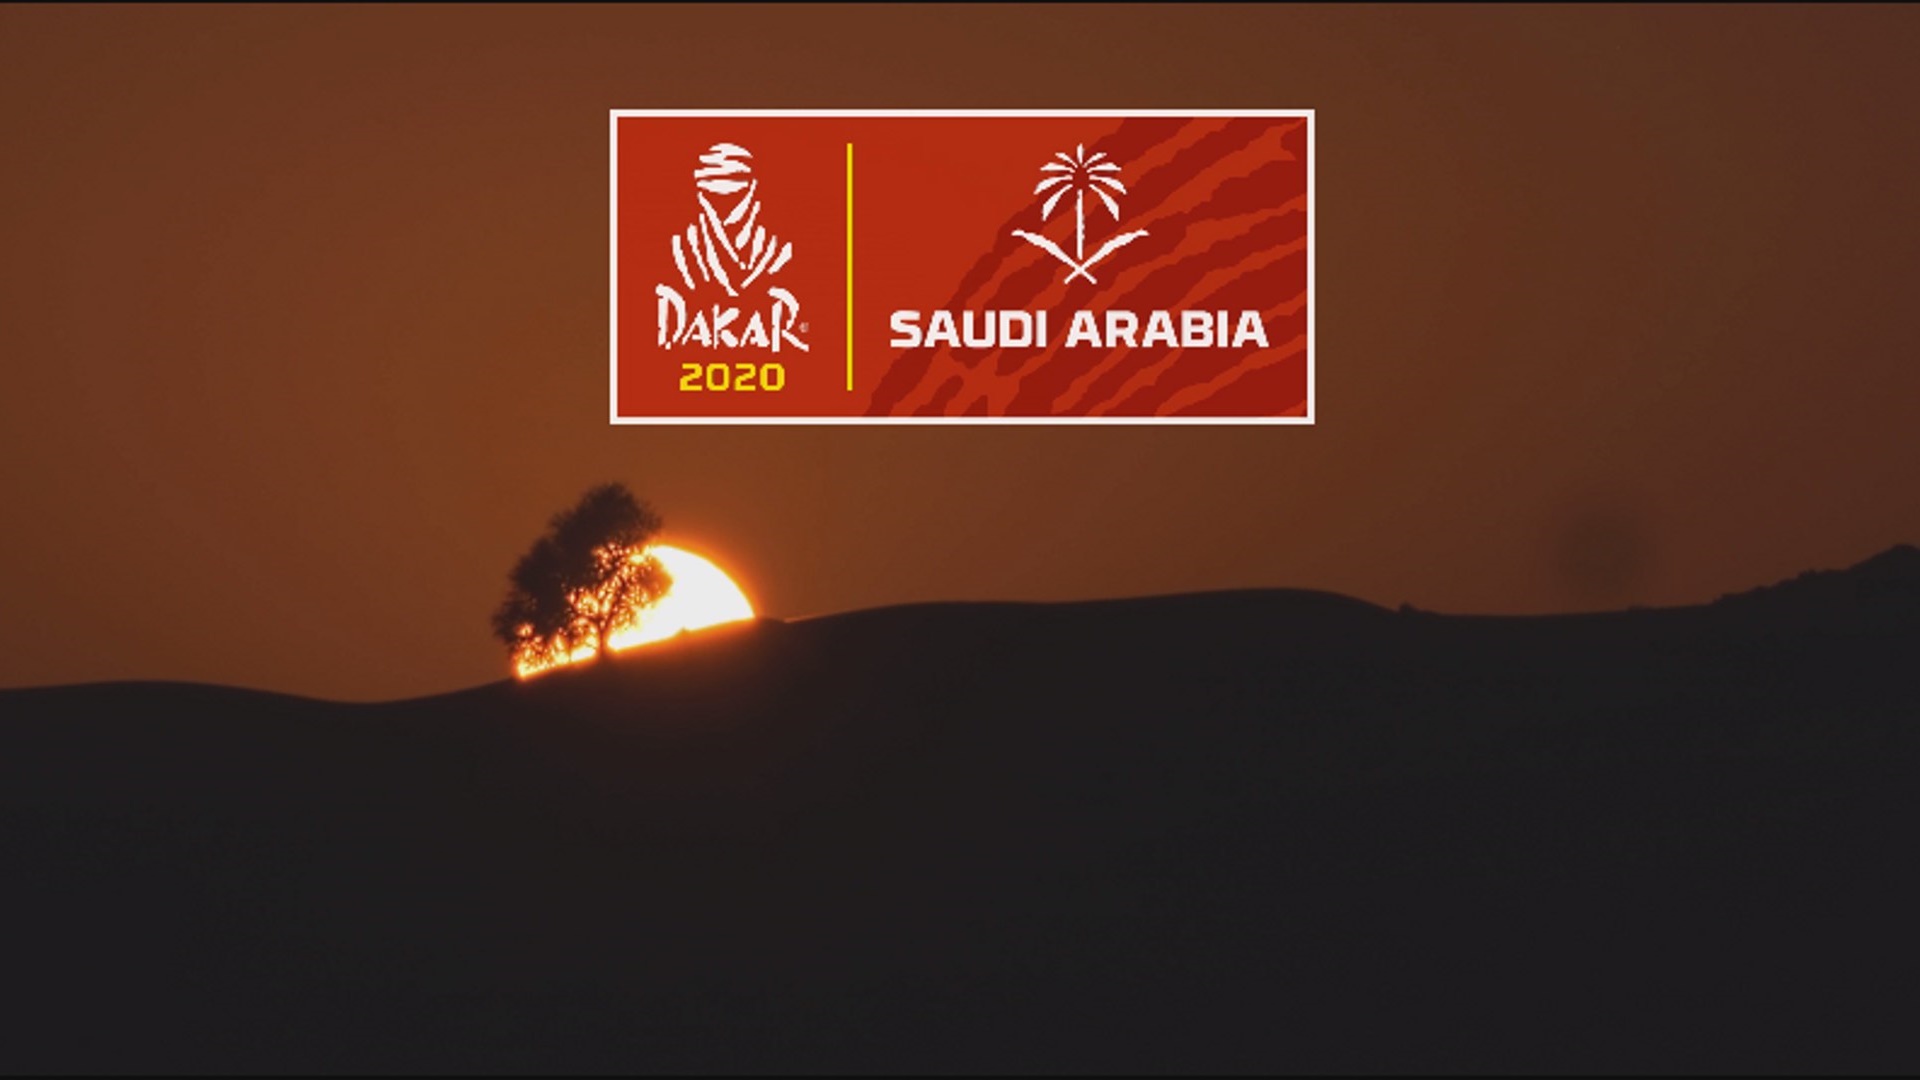 El recorrido del Dakar 2020 en Arabia al detalle